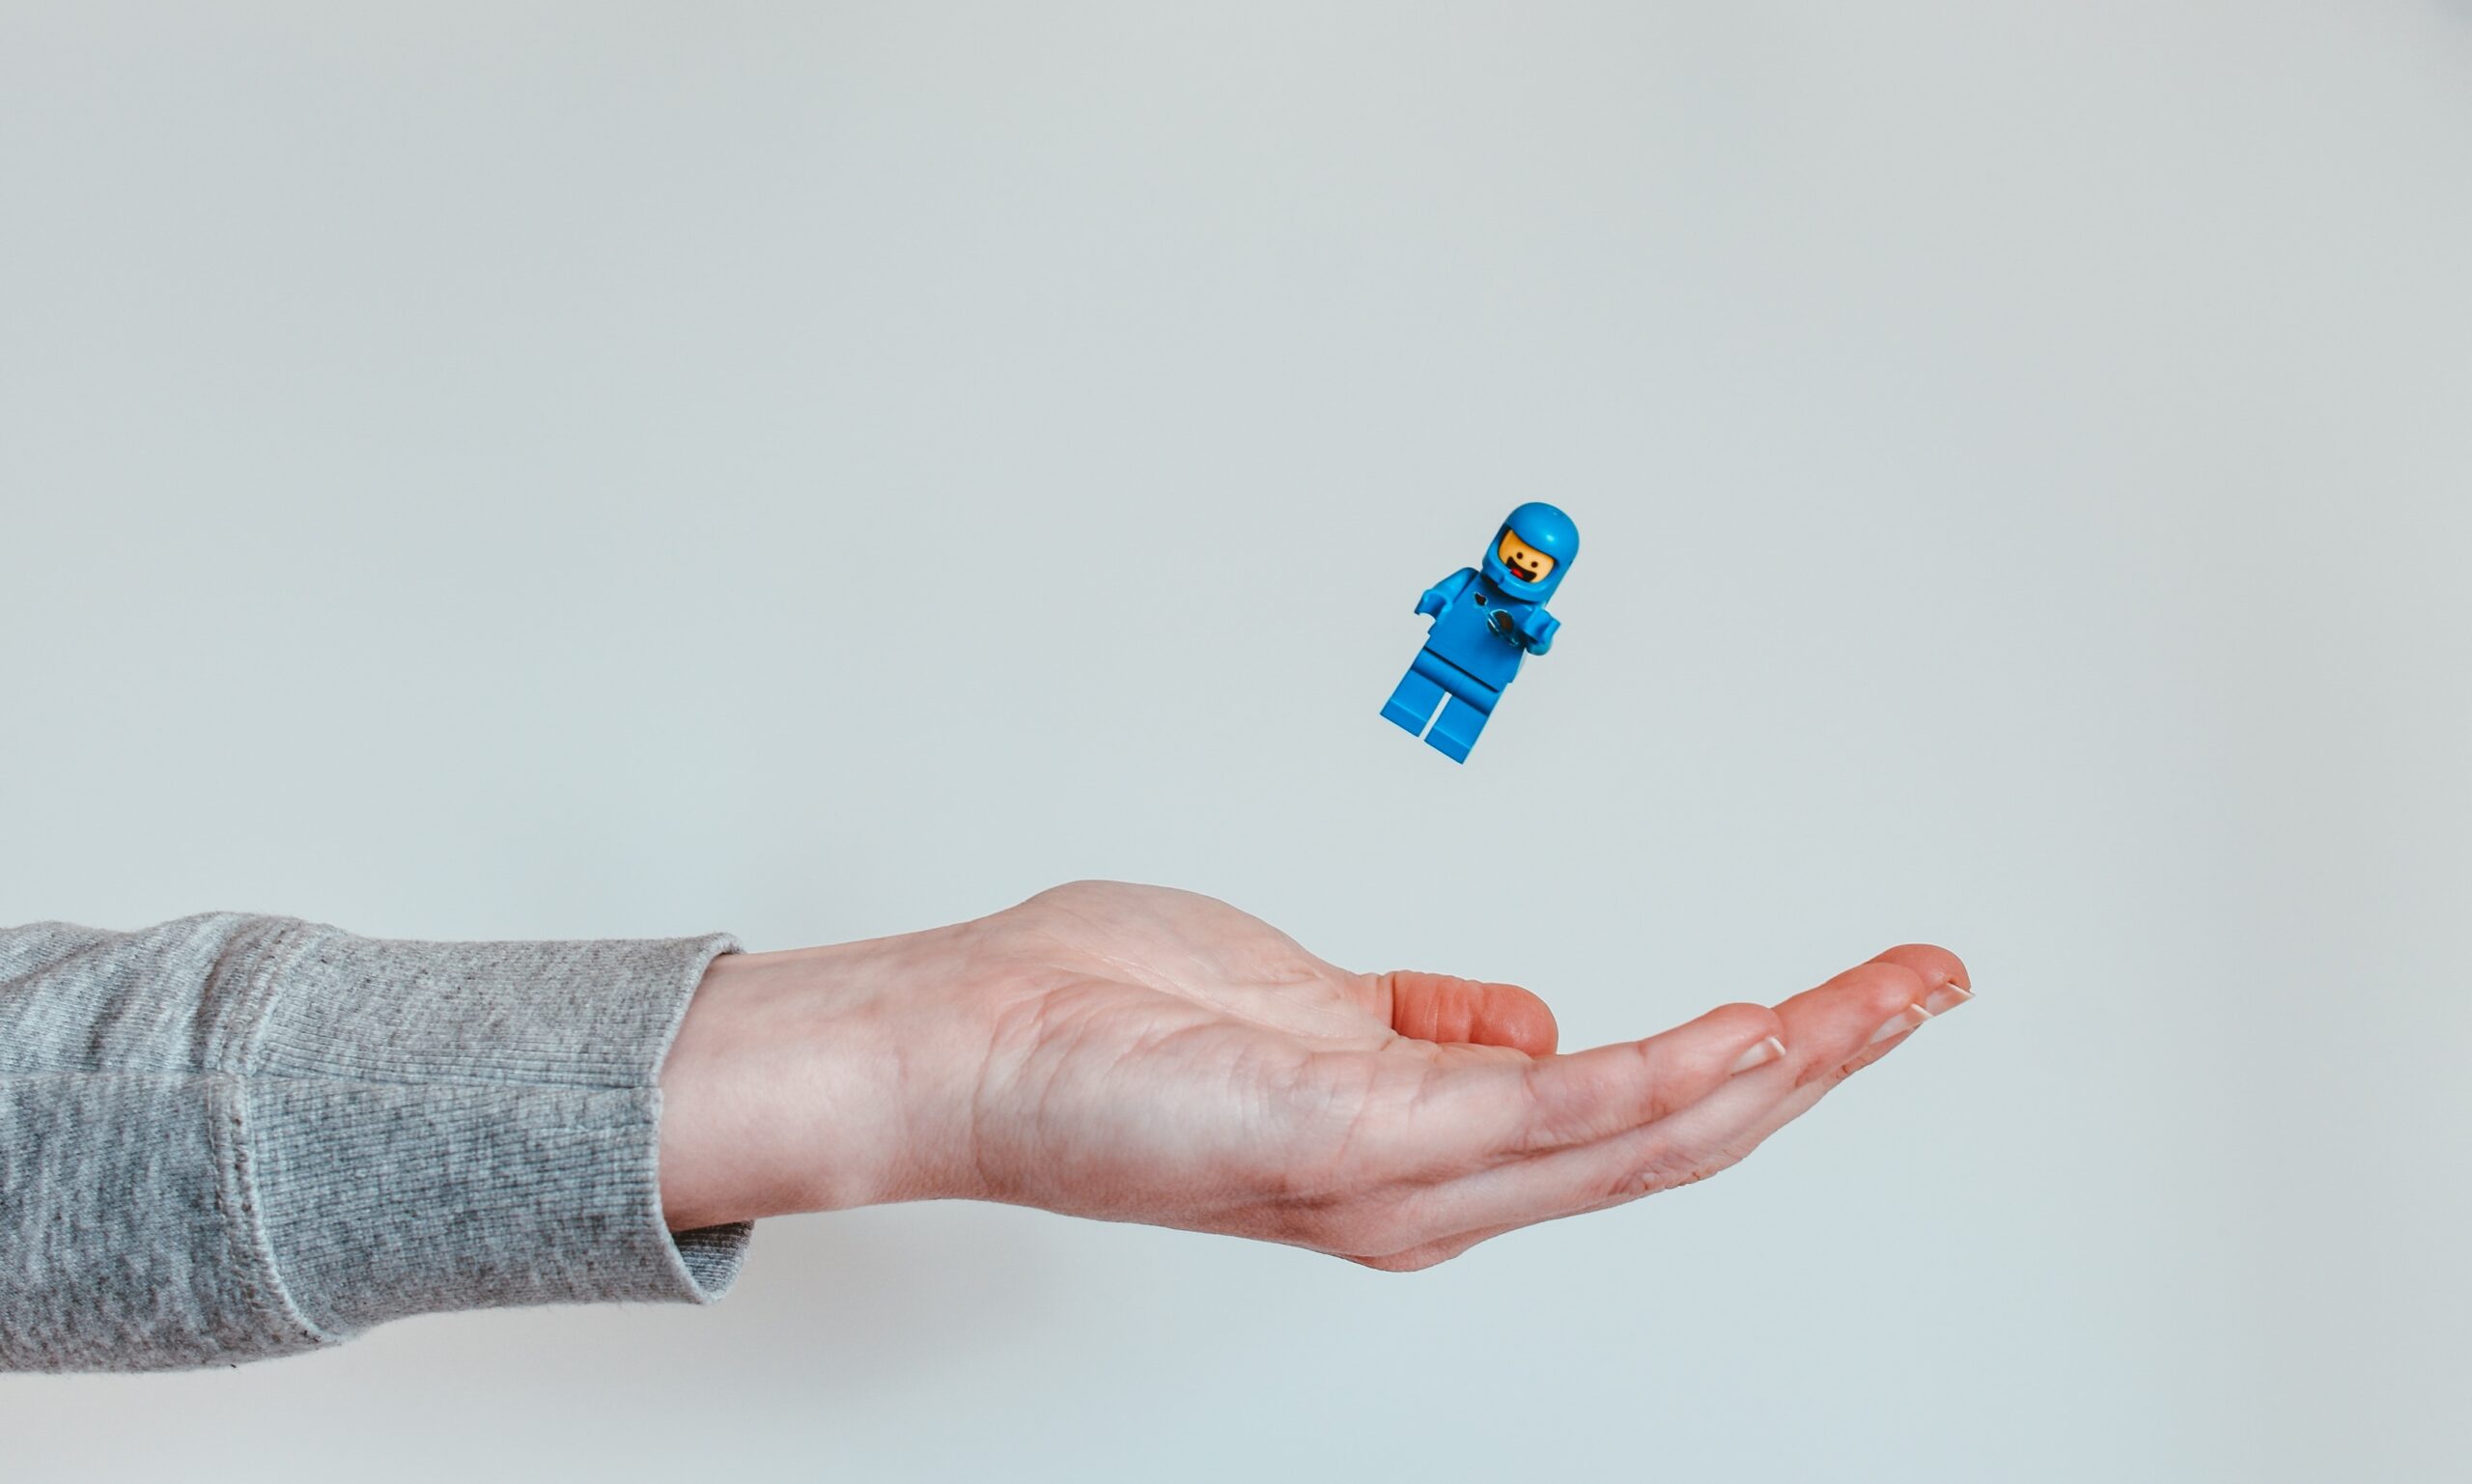 Lego figurine flying